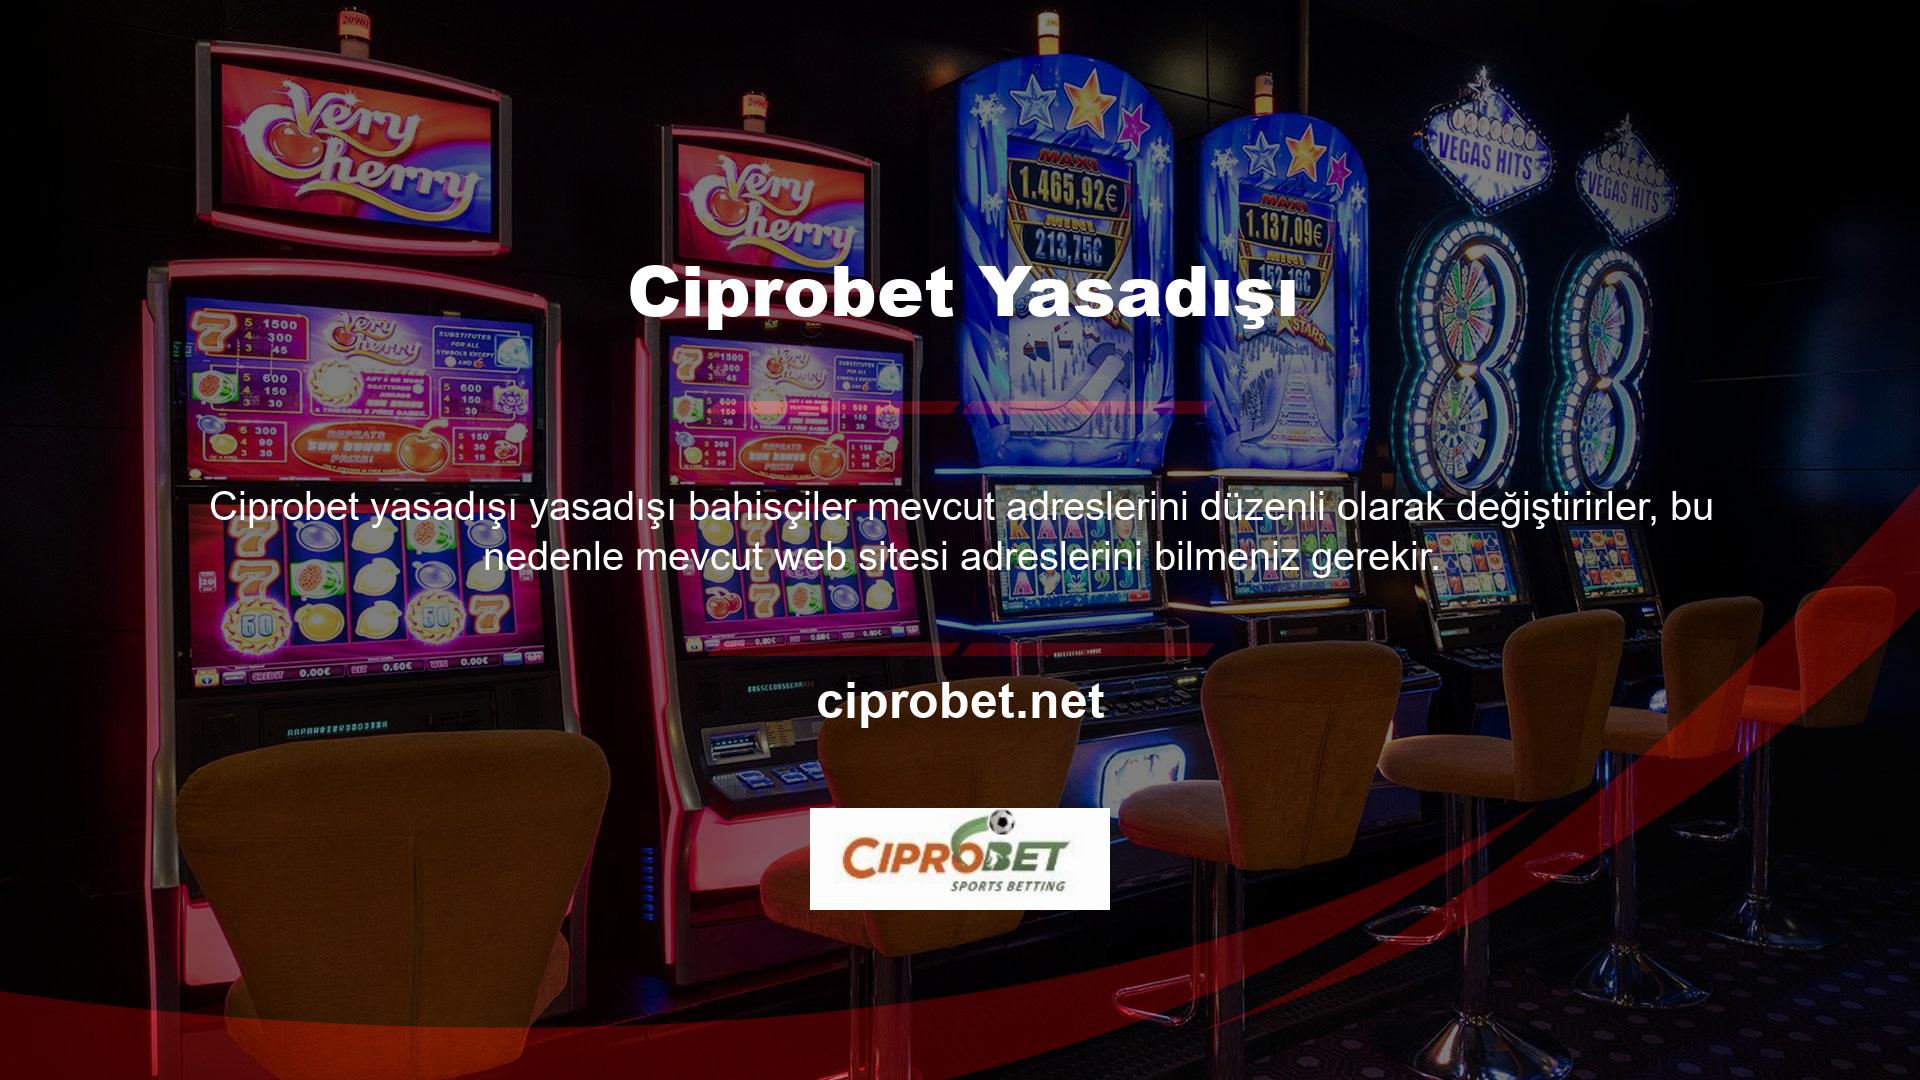 Ciprobet yasa dışı bir casino şirketidir ve tüm kullanıcılar için tek üyelik kaydı gerektirmektedir